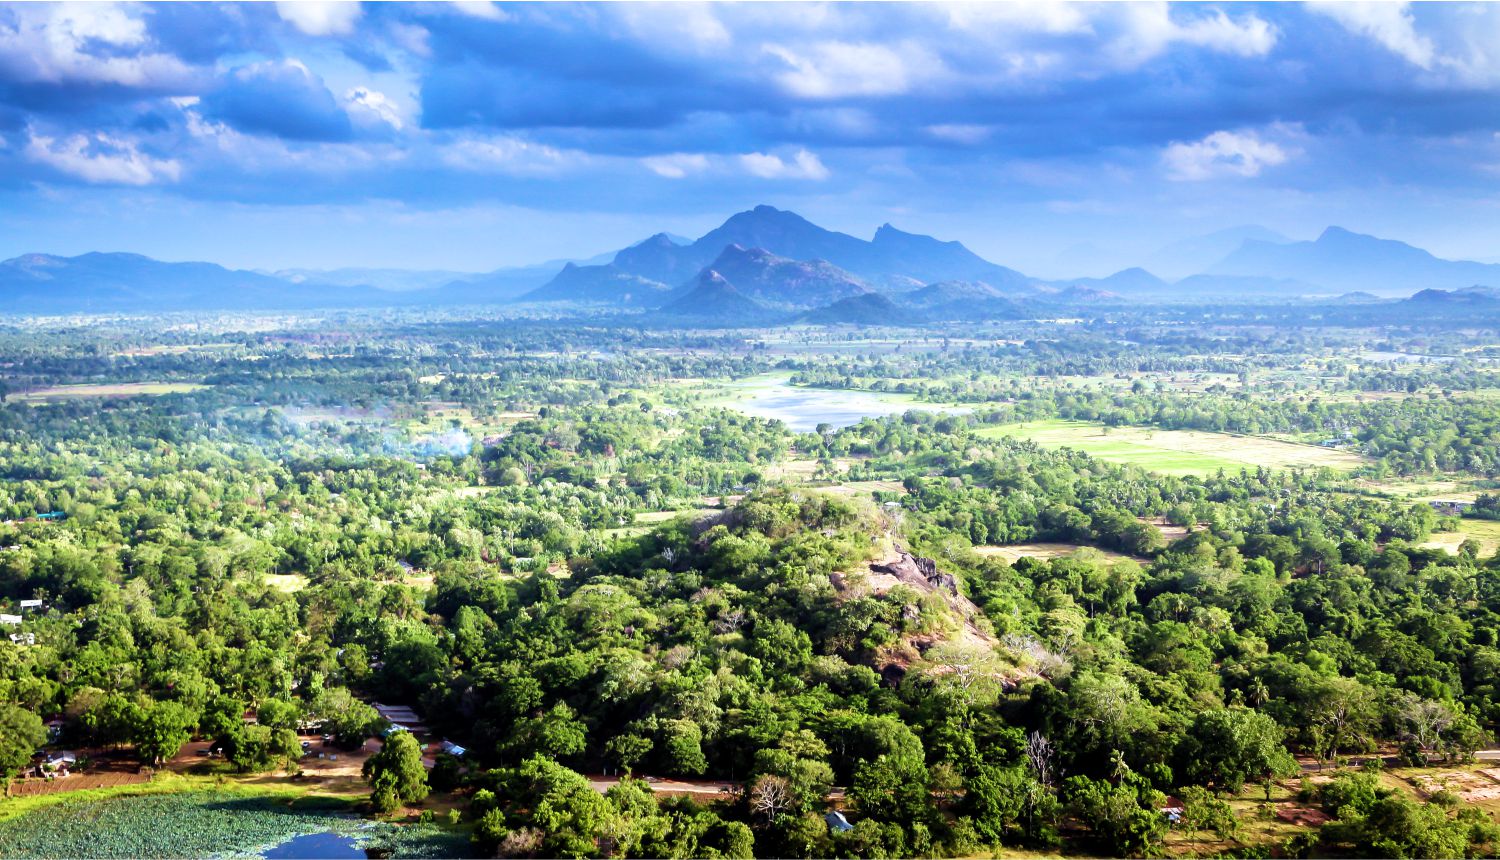 Ngắm thành phố với những khu vườn đẹp như cổ tích tại Sri Lanka   - Ảnh 9.